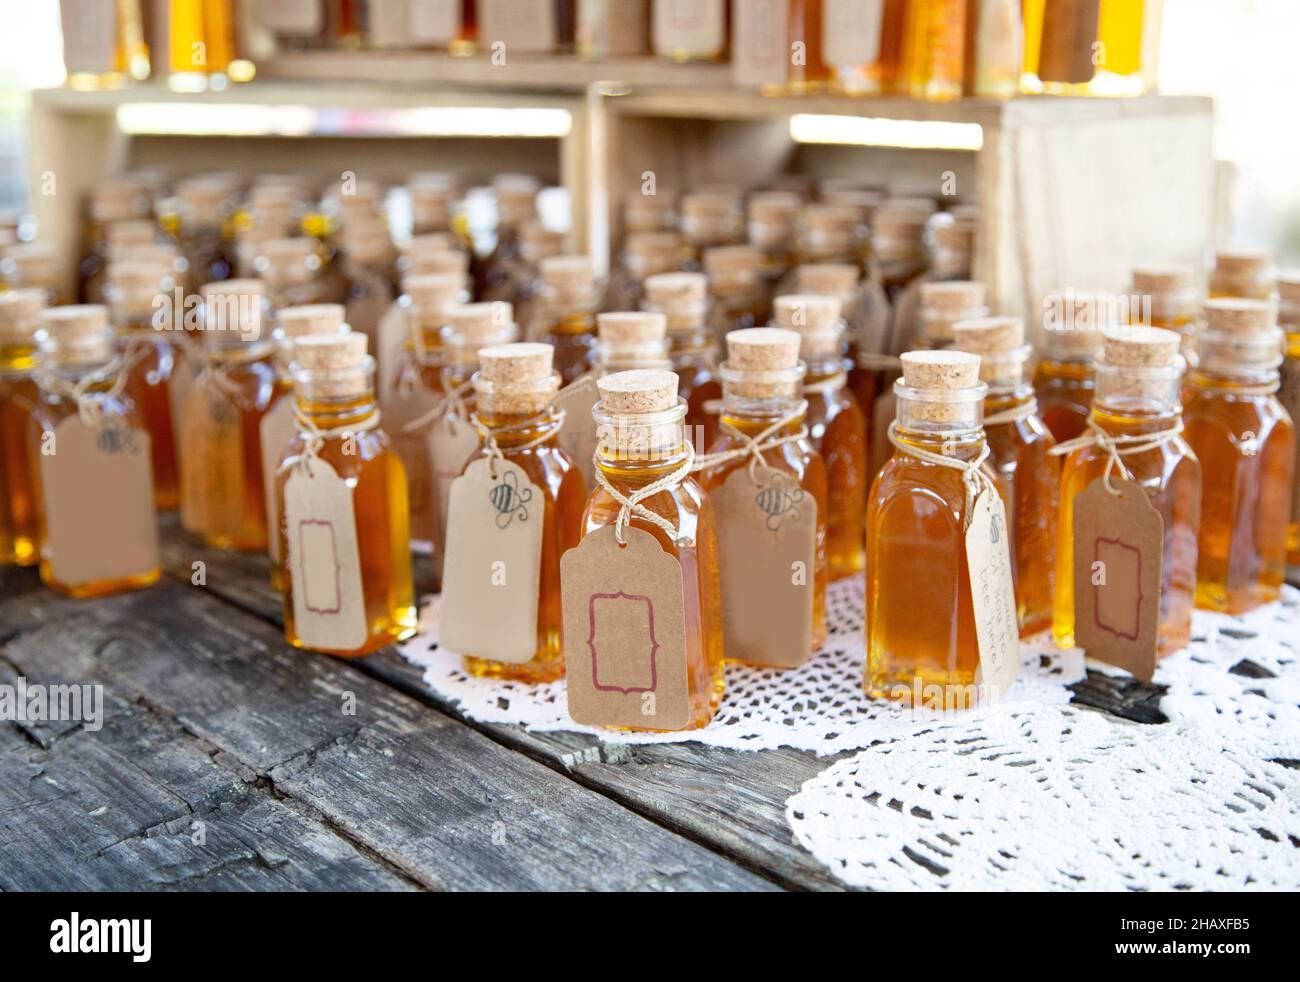 Beaucoup de bouteilles de miel avec des étiquettes vierges Banque D'Images